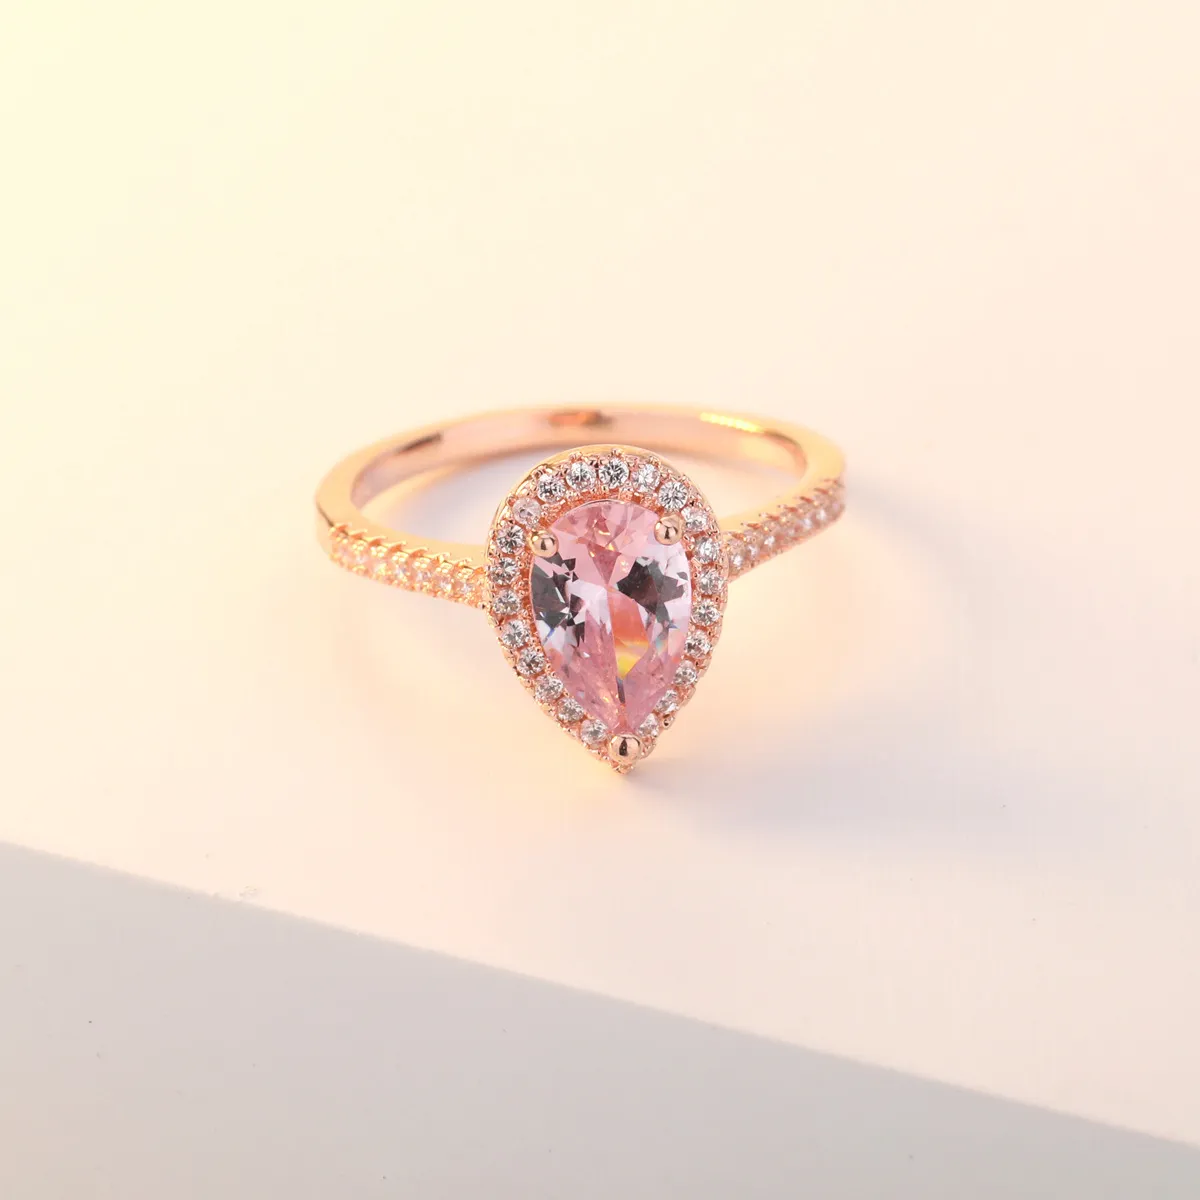 OMHXZJ Цельноевропейское модное кольцо для женщин и девочек, свадебный подарок, капля воды, розовый, белый циркон, кольцо из розового золота 18 карат, RR5983400836